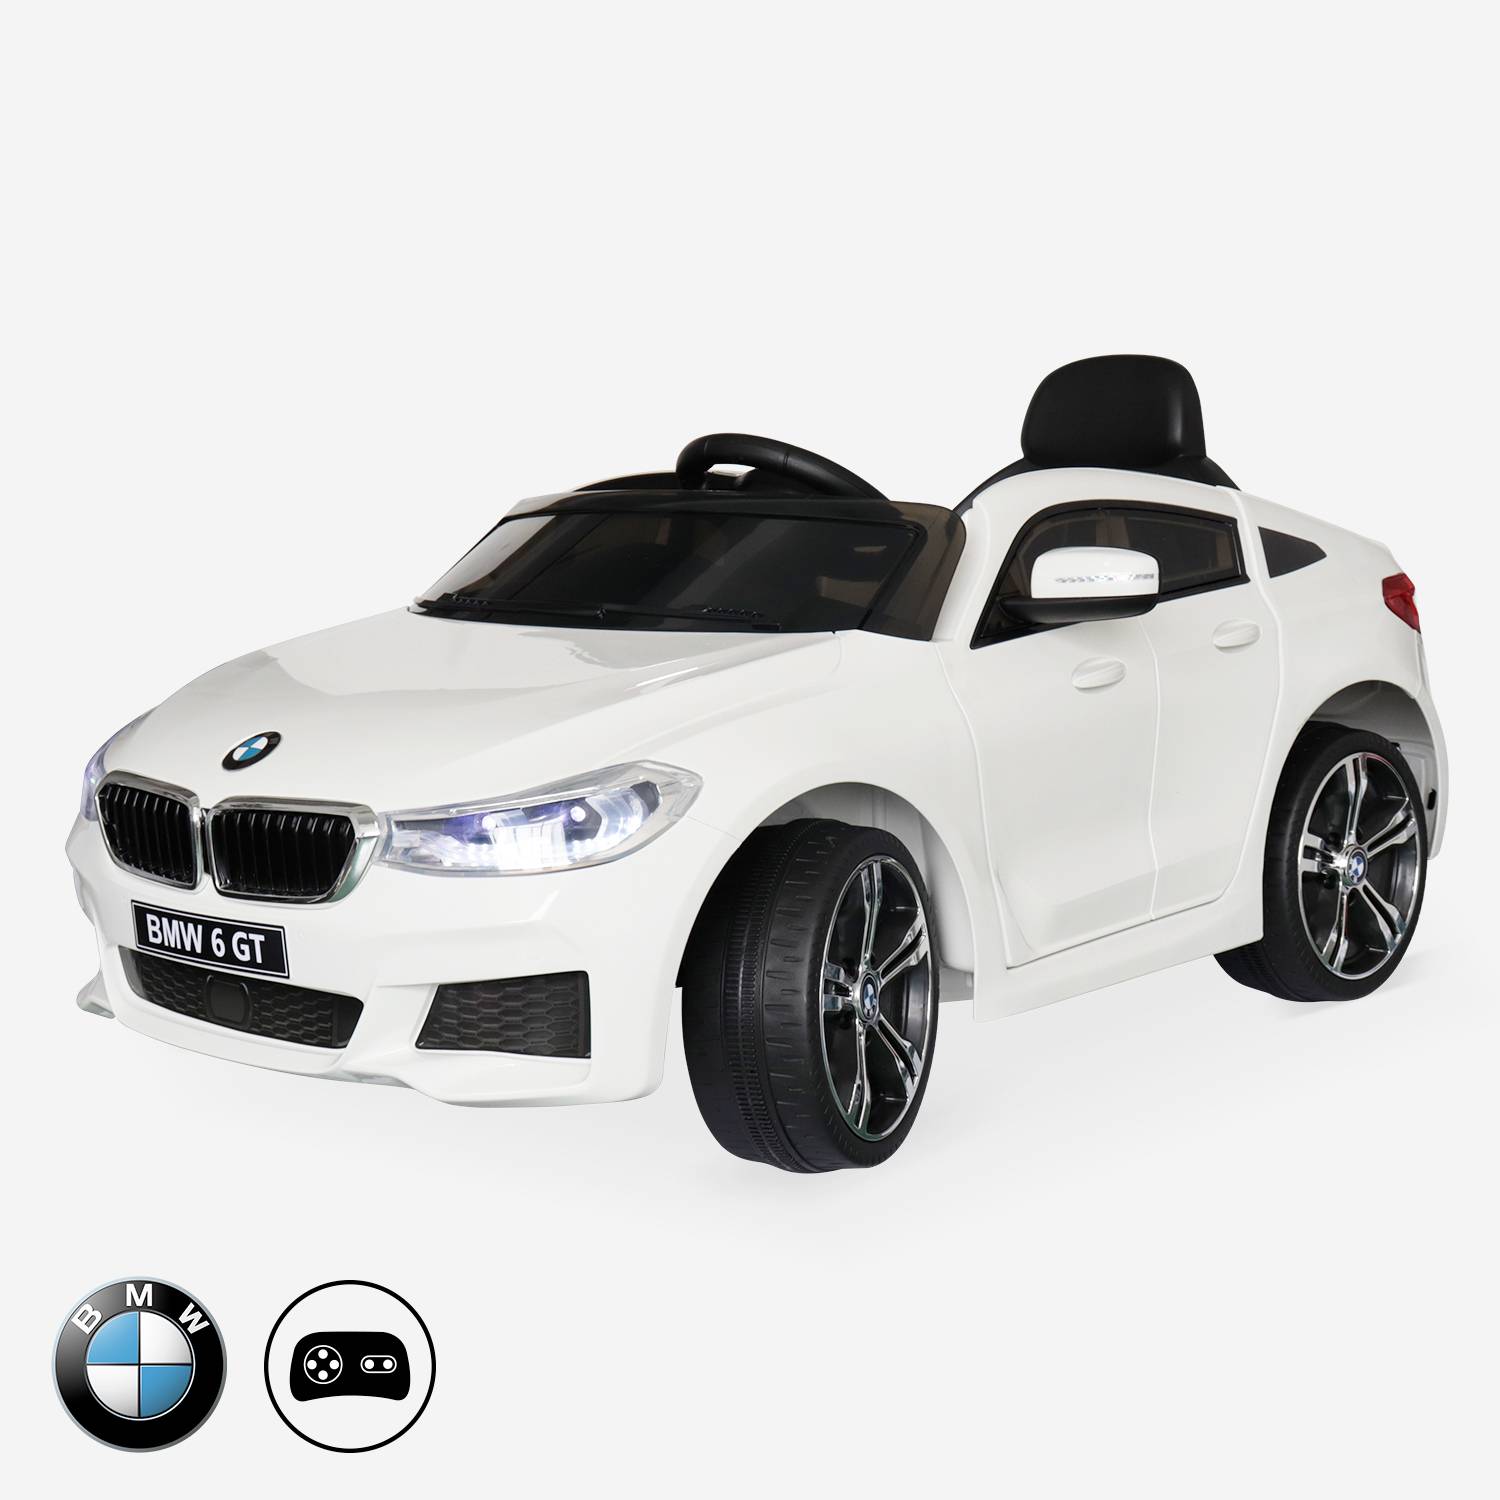 BMW Série 6 GT Gran Turismo branco, carro elétrico para crianças 12V 4 Ah, 1 lugar, com rádio e controlo remoto,sweeek,Photo1